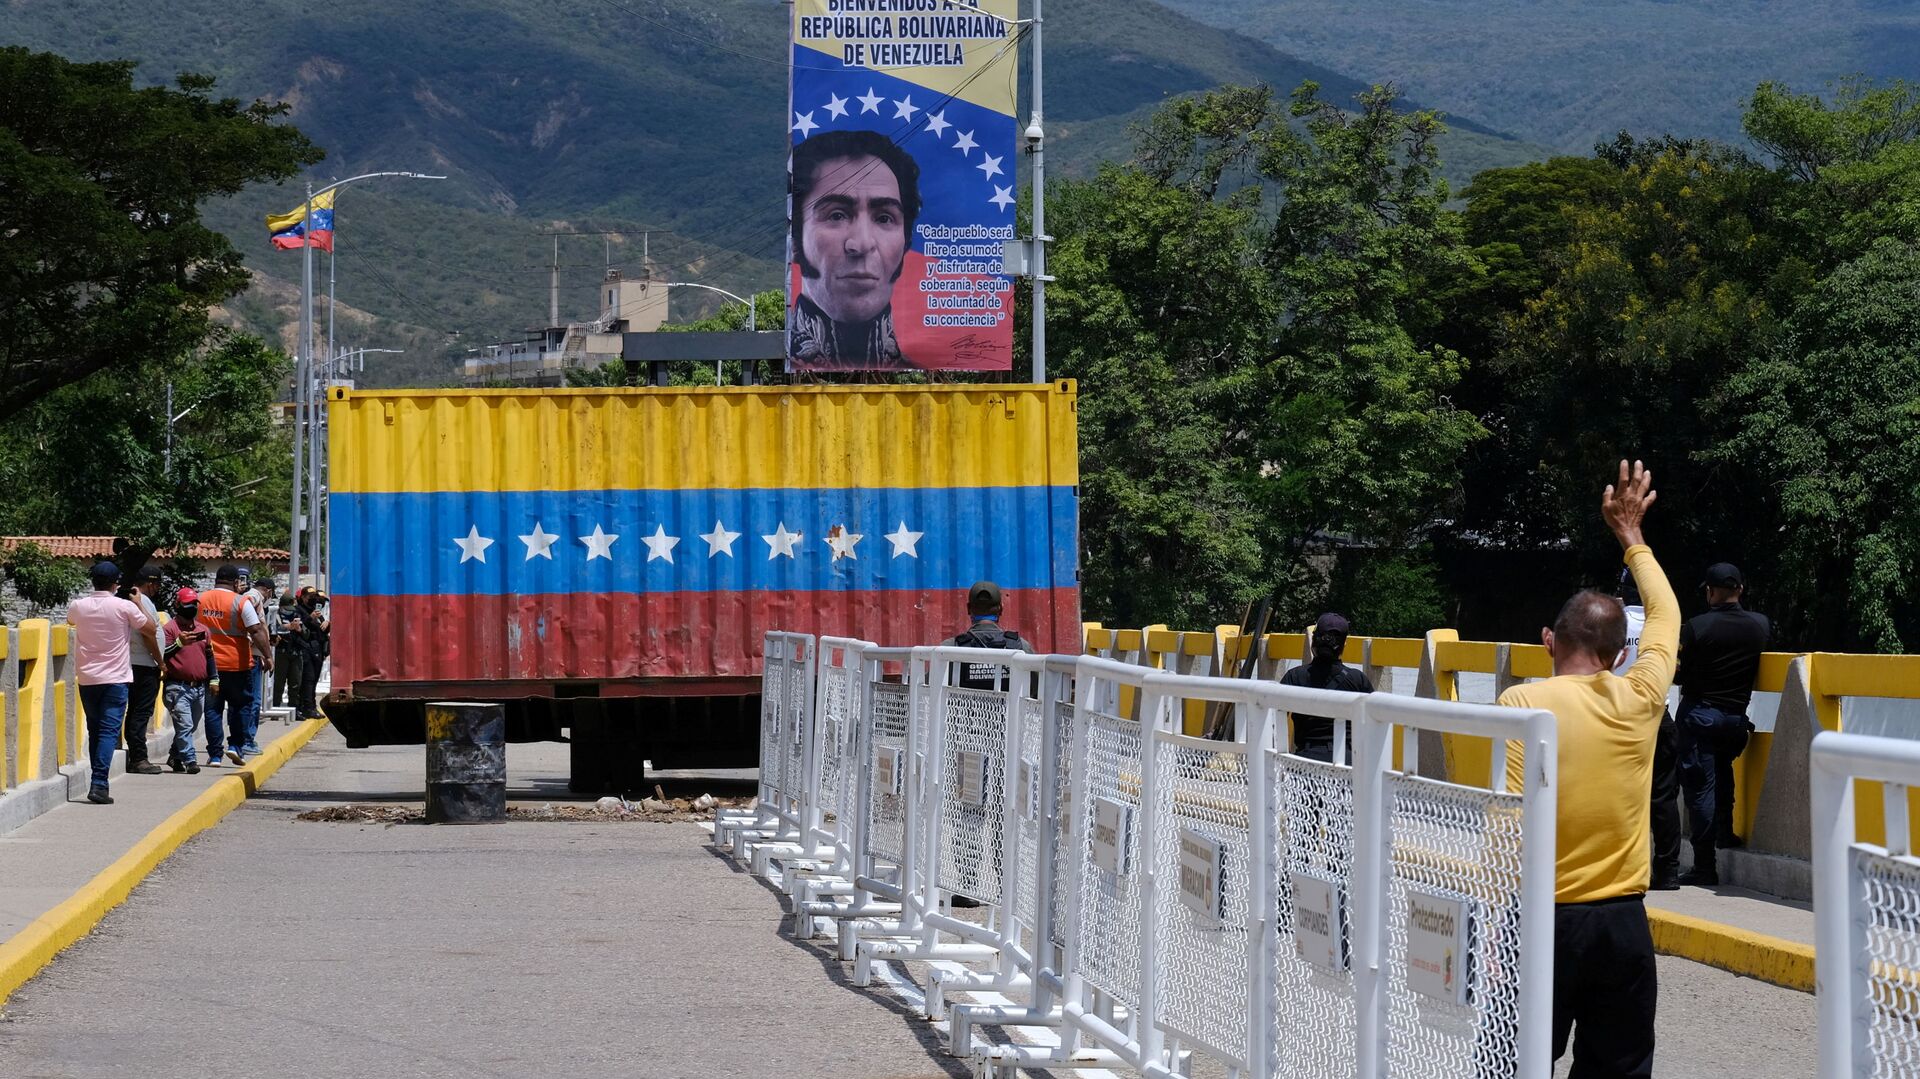 إعادة فتح الحدود بين فنزويلا وكولومبيا، بعد خلاف سياسي بين البلدين في 2019ن 4 أكتوبر 2021 - سبوتنيك عربي, 1920, 17.10.2021